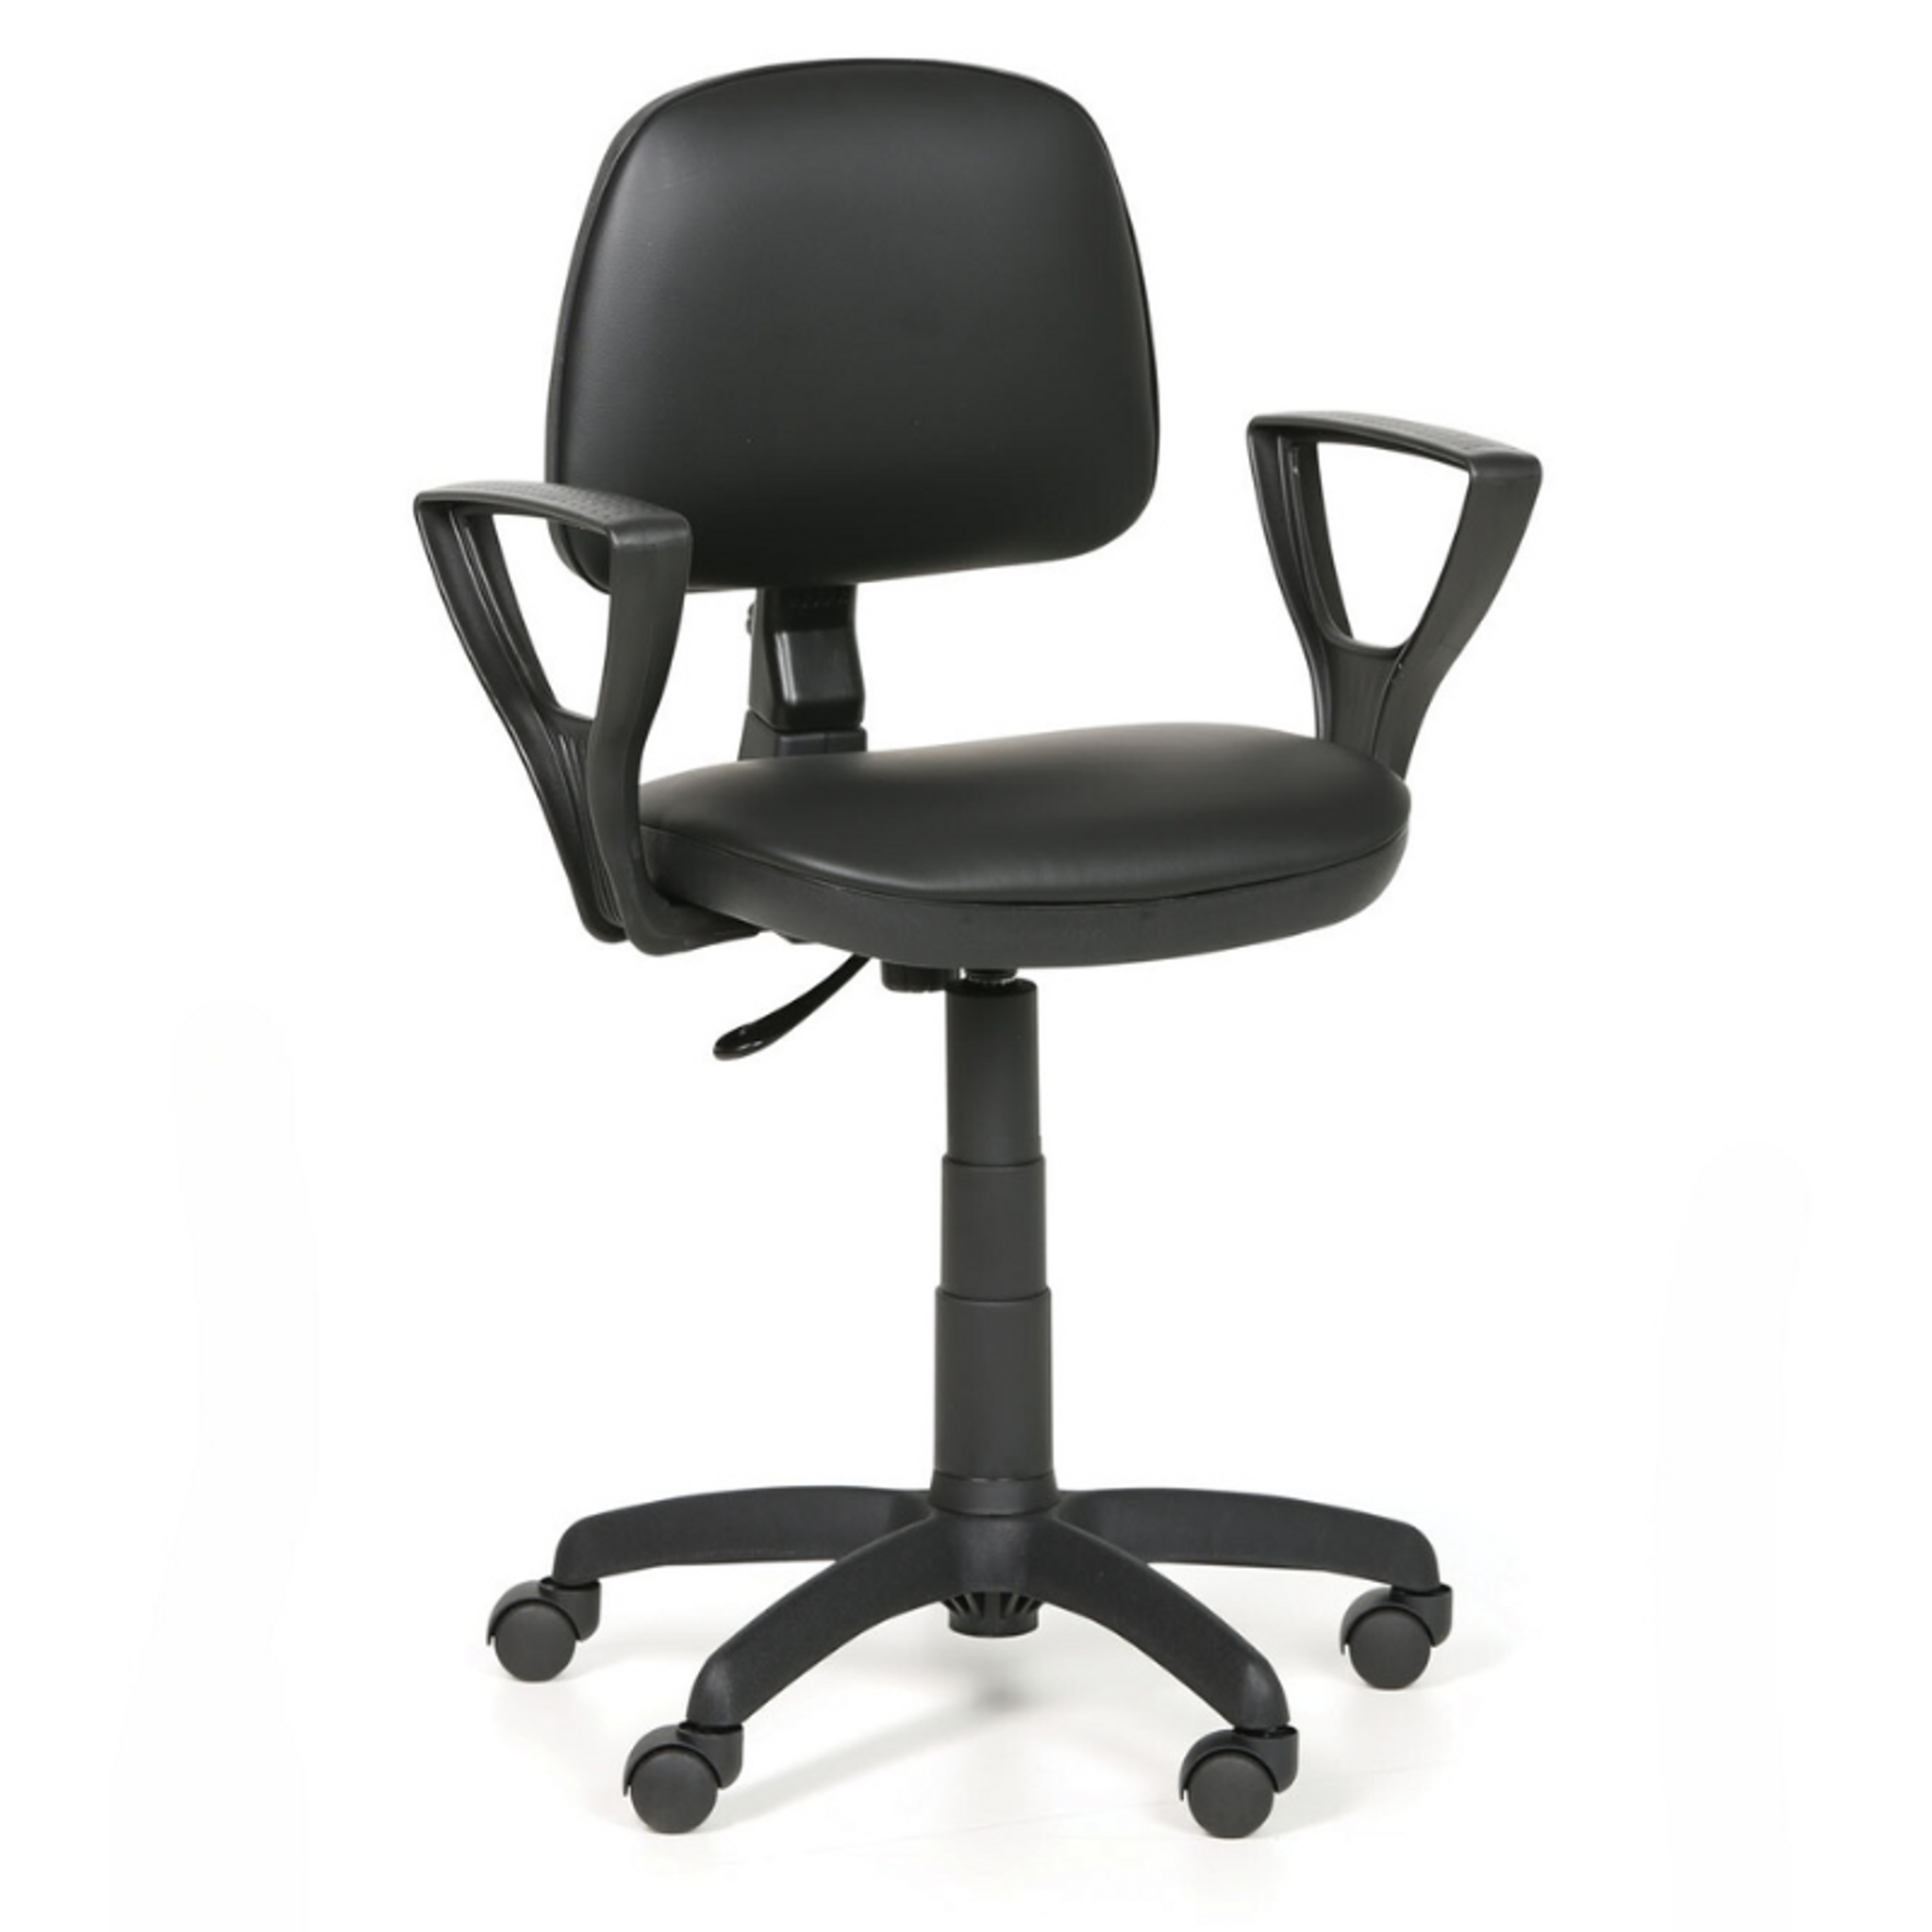 Pracovní židle na kolečkách MILANO s područkami, permanentní kontakt, pro měkké podlahy